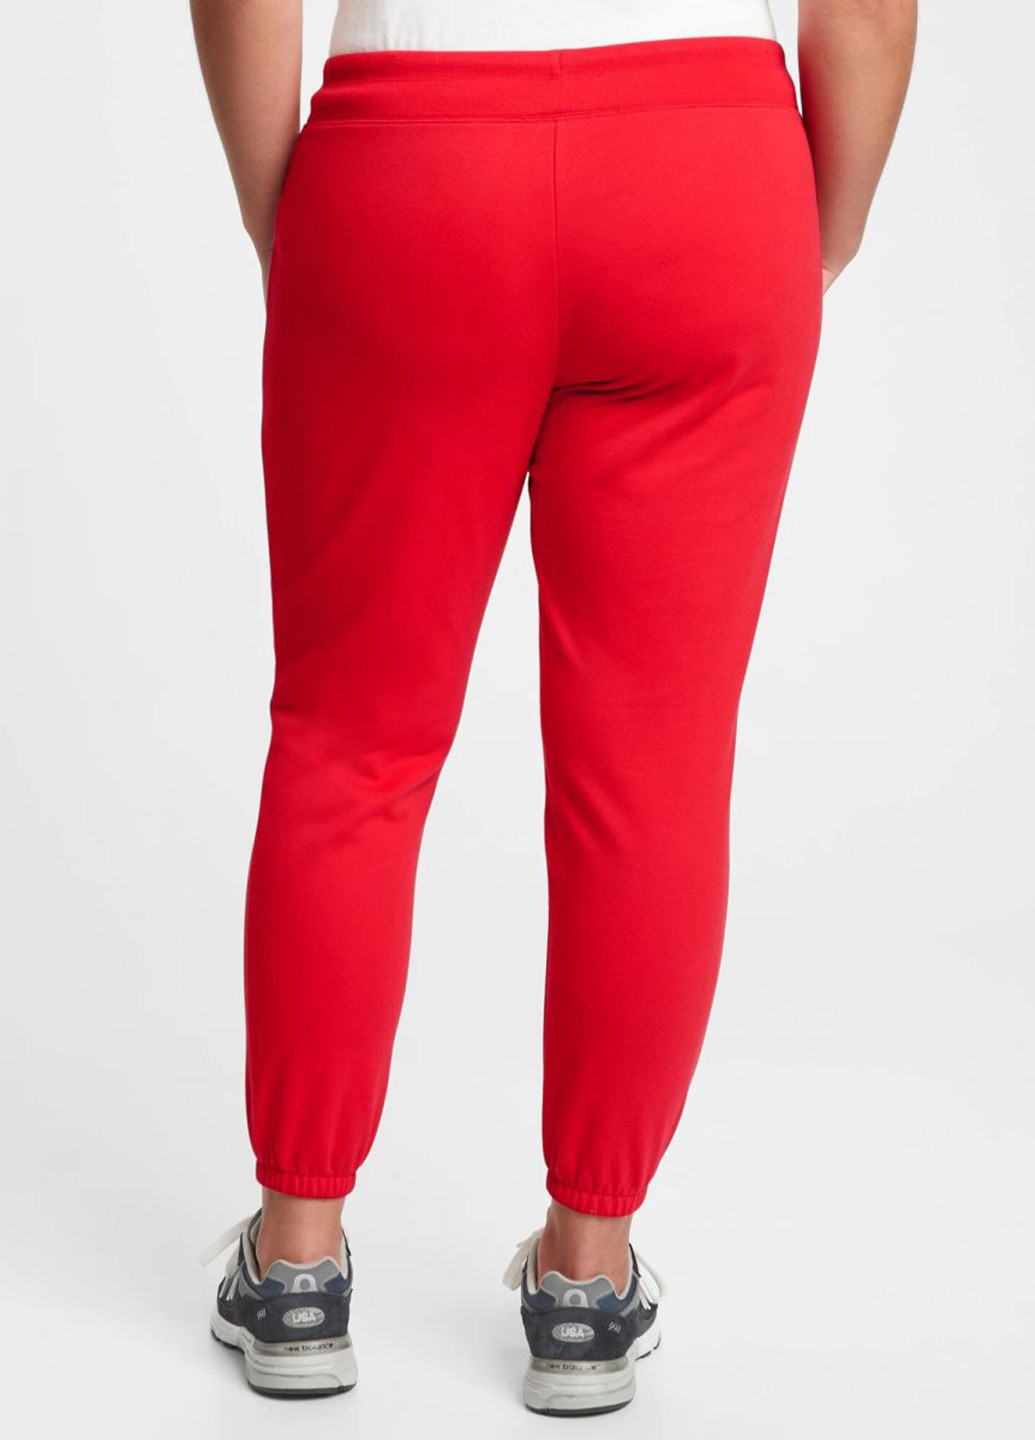 Костюм (толстовка, брюки) Gap логотип красный спортивный трикотаж, хлопок